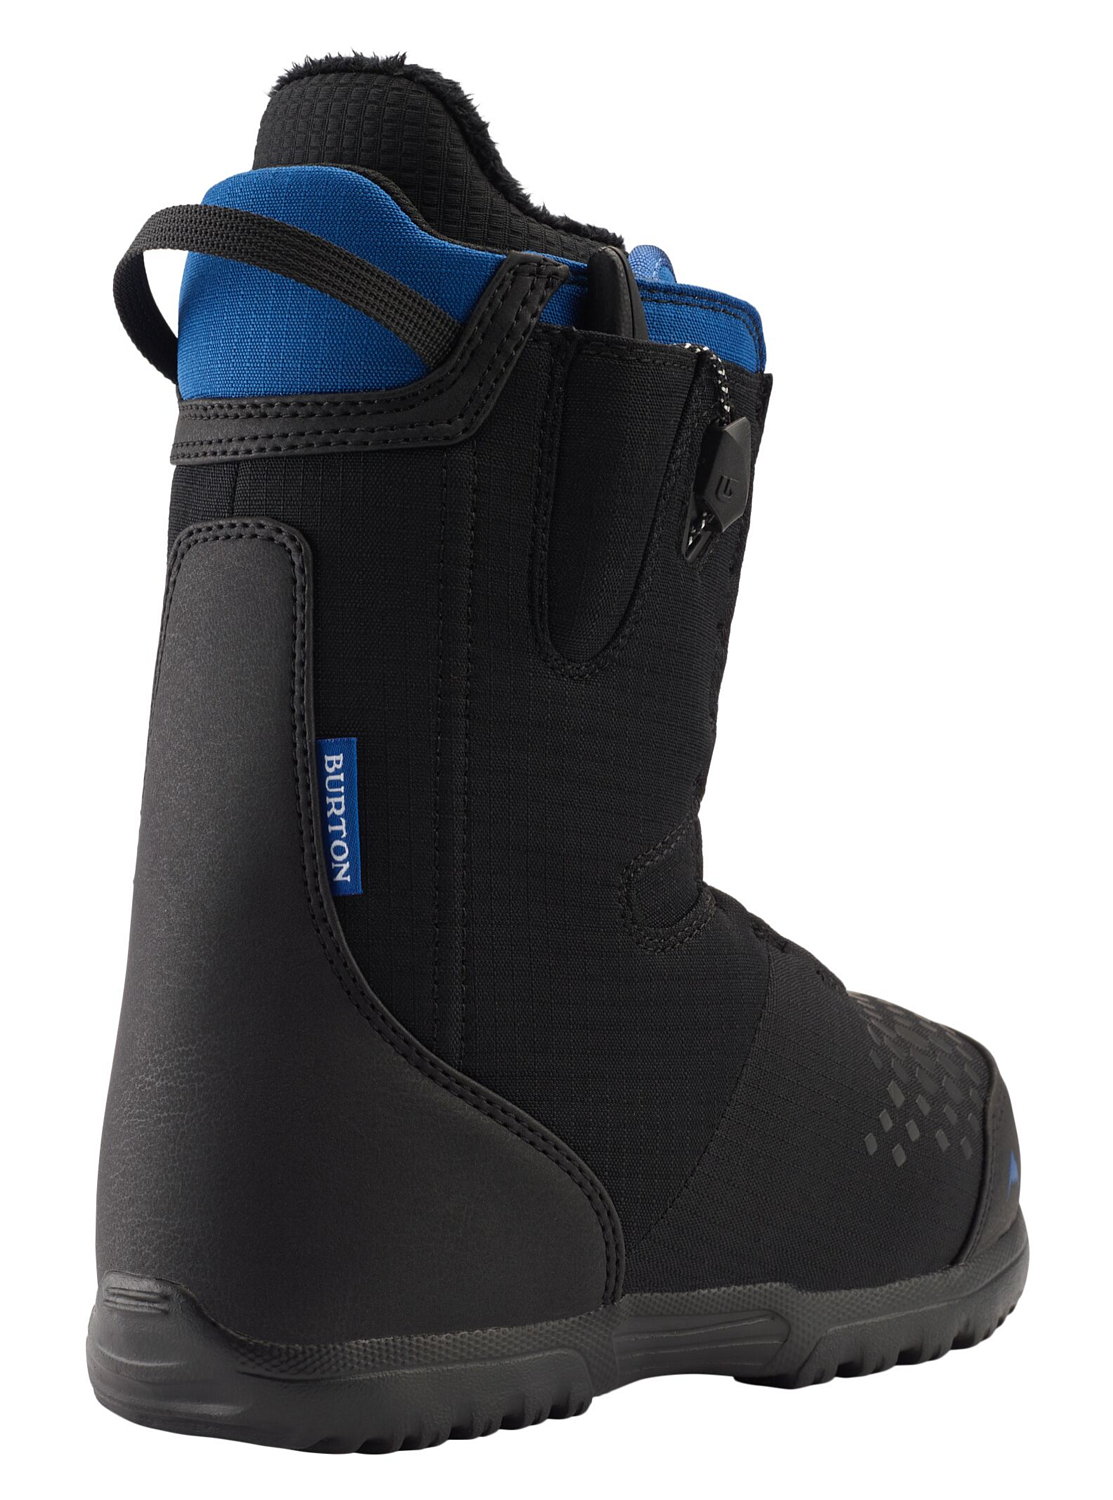 Ботинки для сноуборда детские BURTON 2020-21 Concord smalls Black/Blue